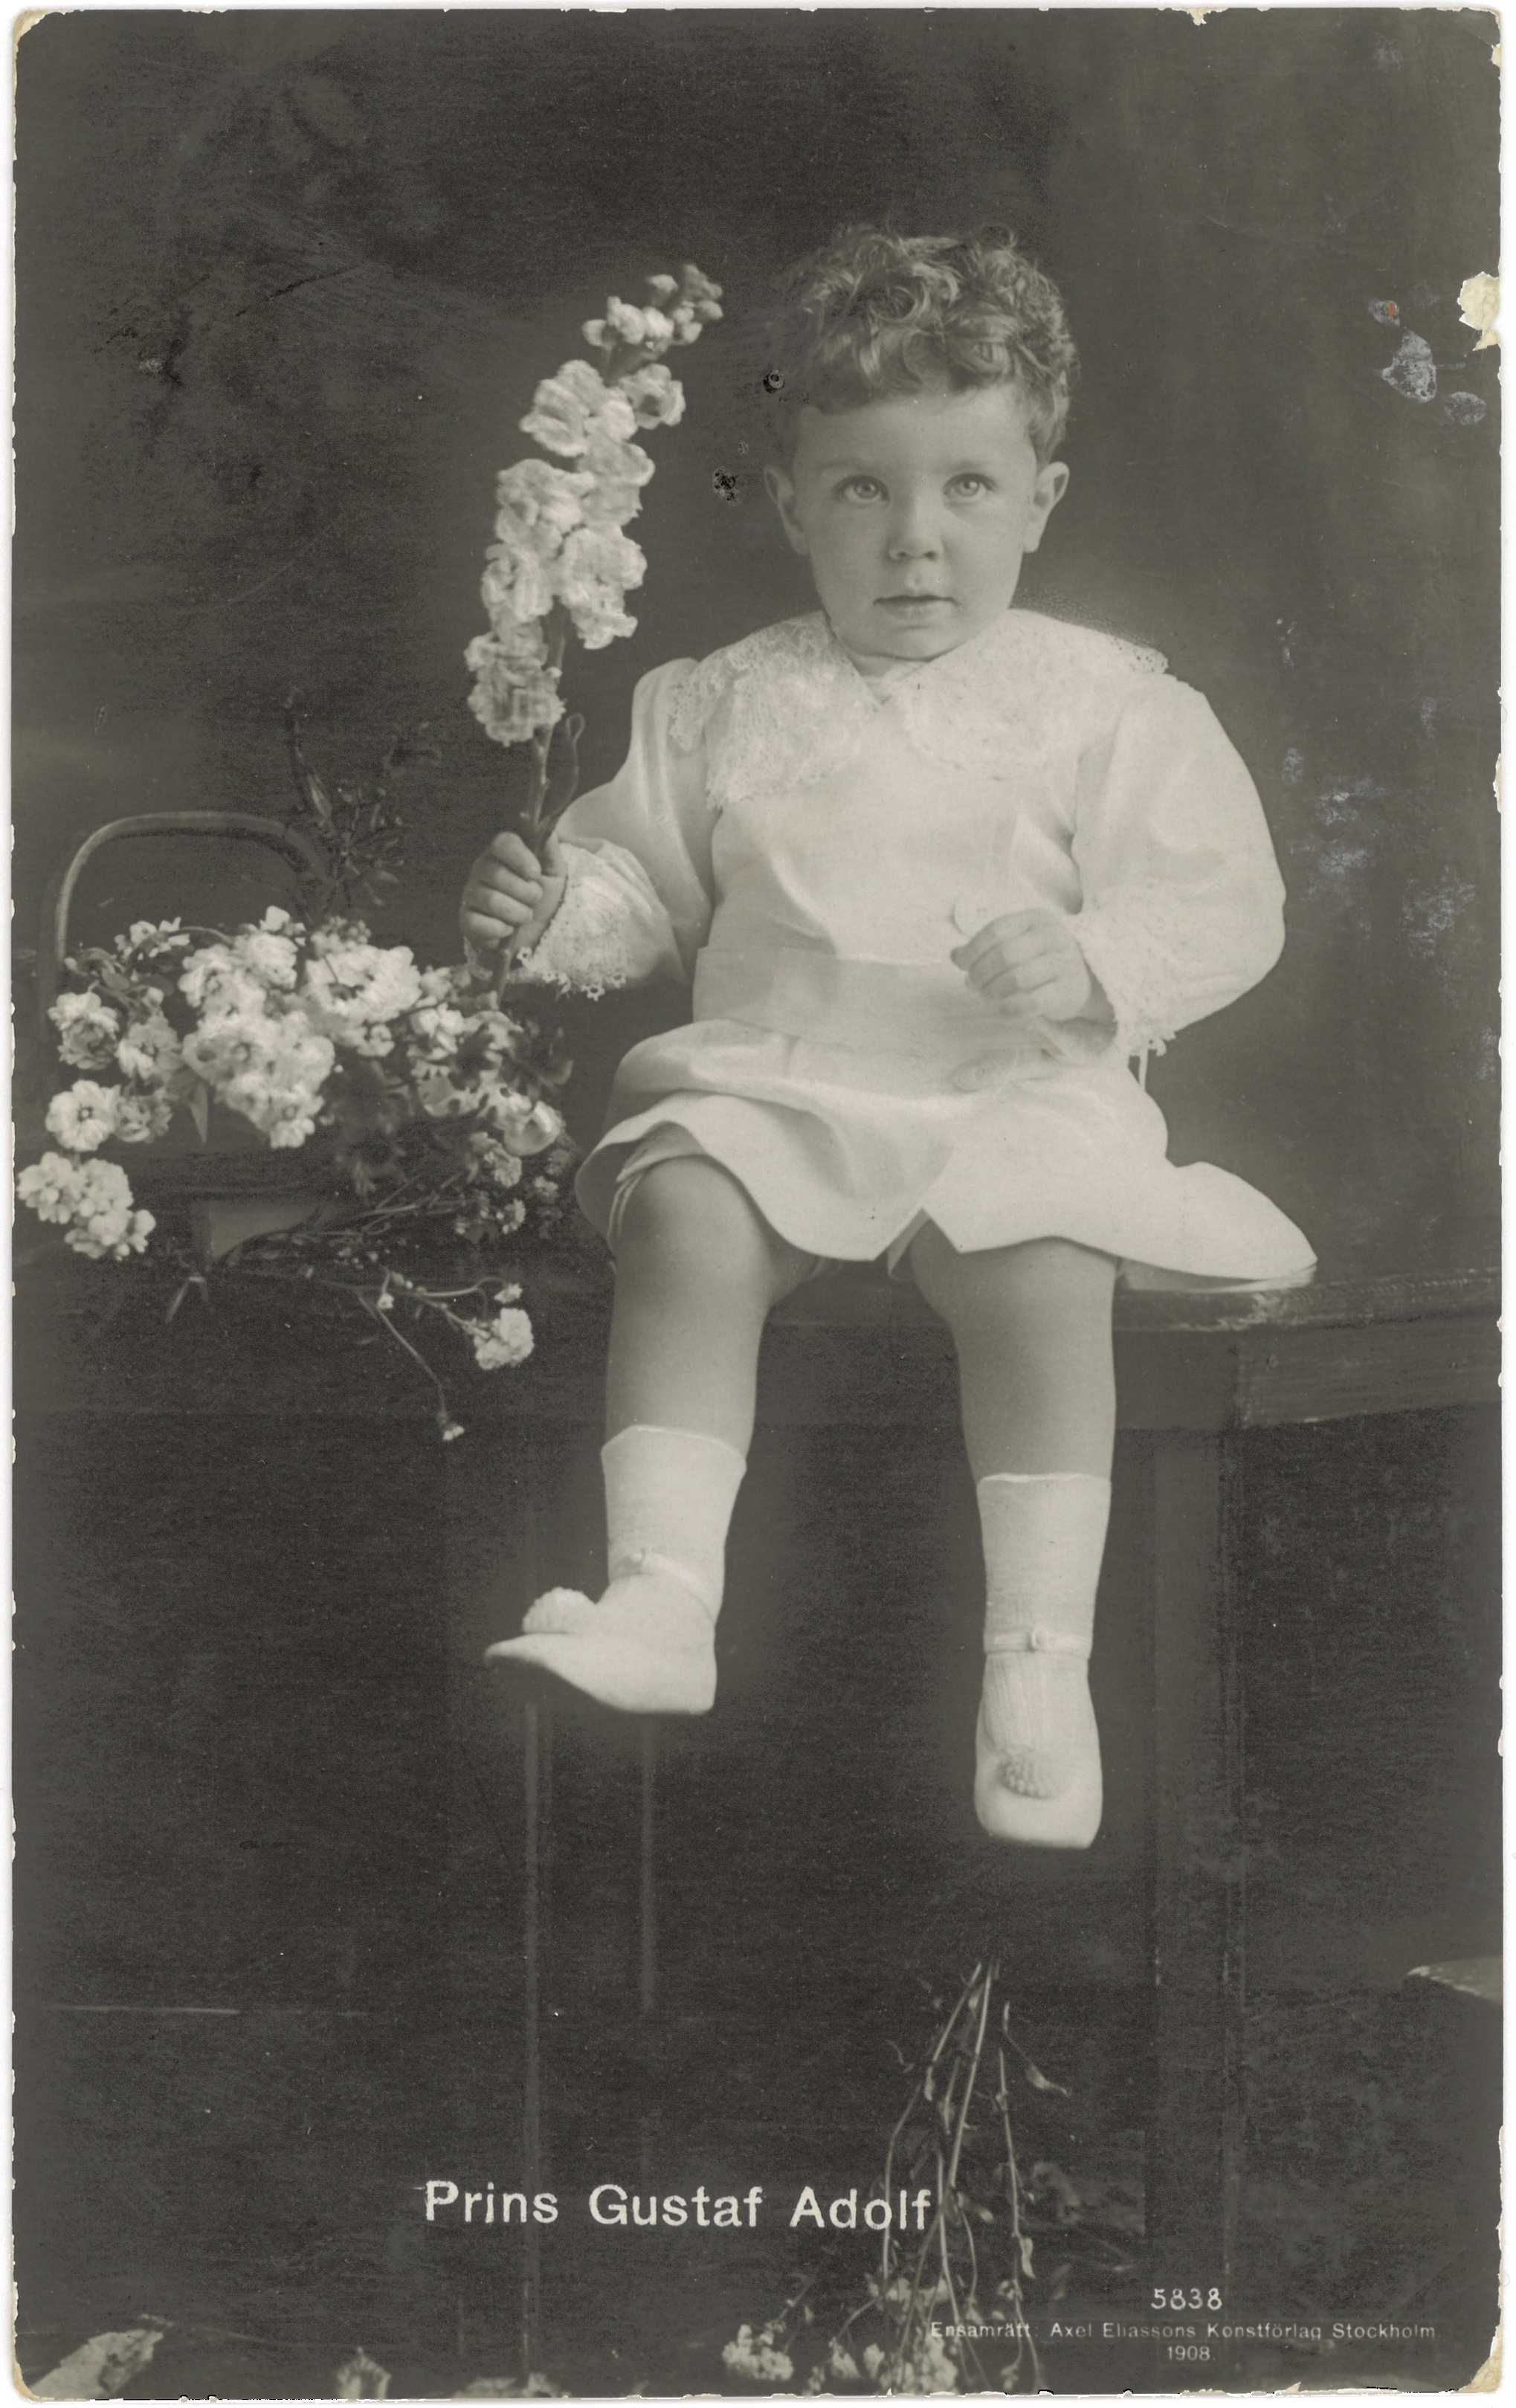 Prins Gustaf Adolf (1908)